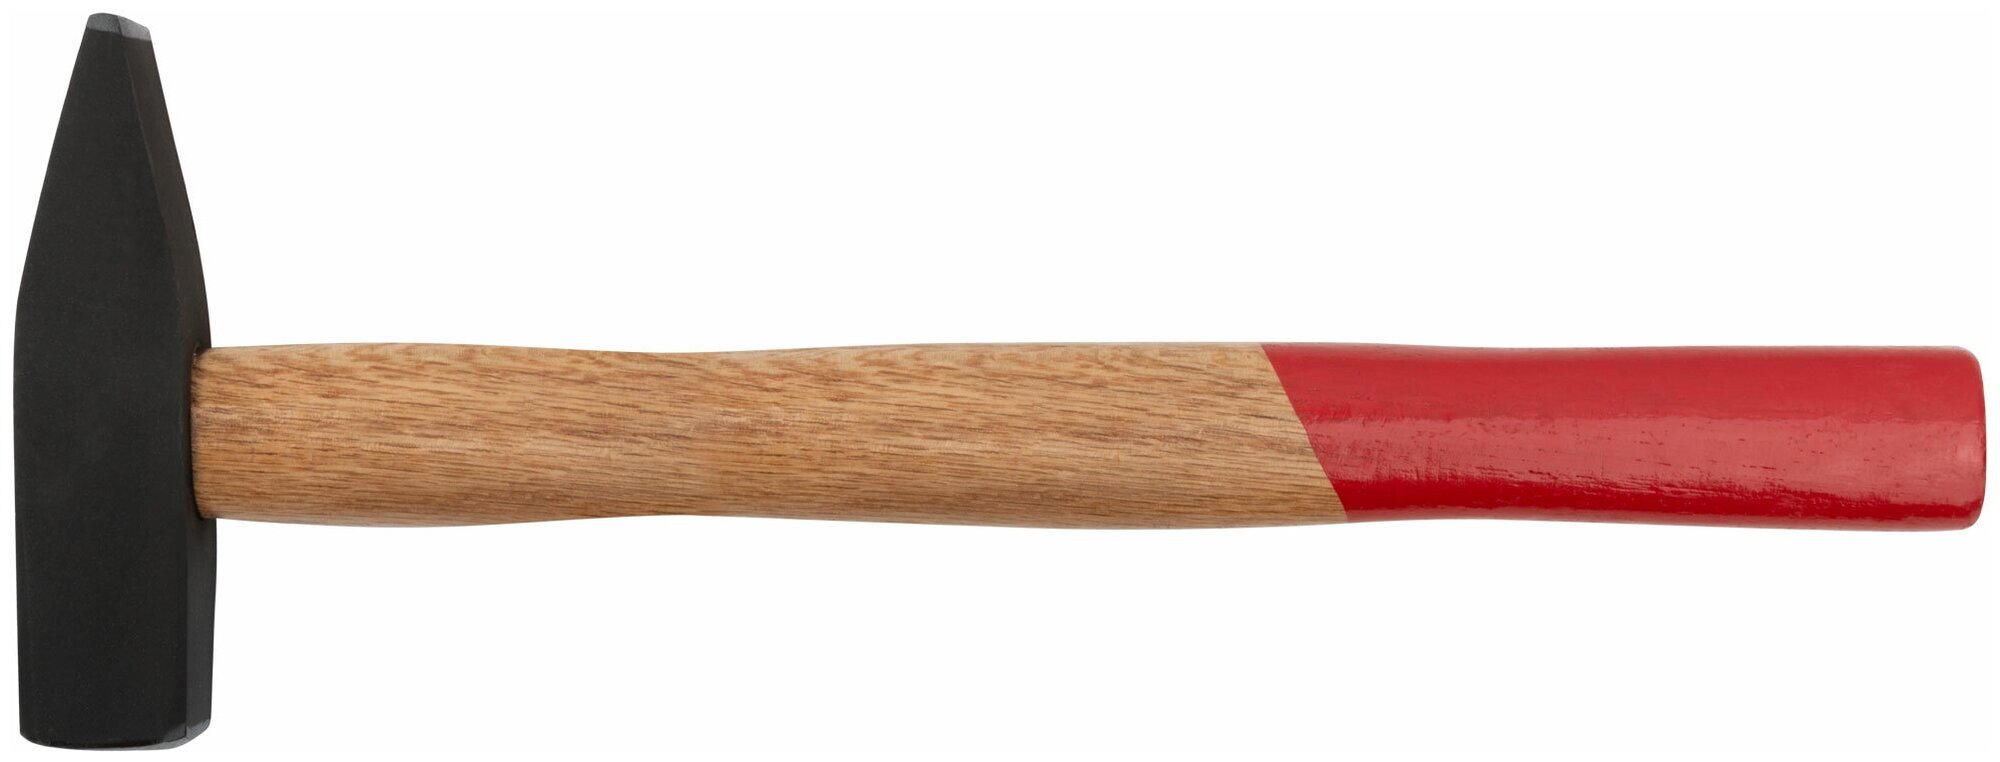 Молоток слесарный, деревянная ручка Оптима 600 гр. 44106